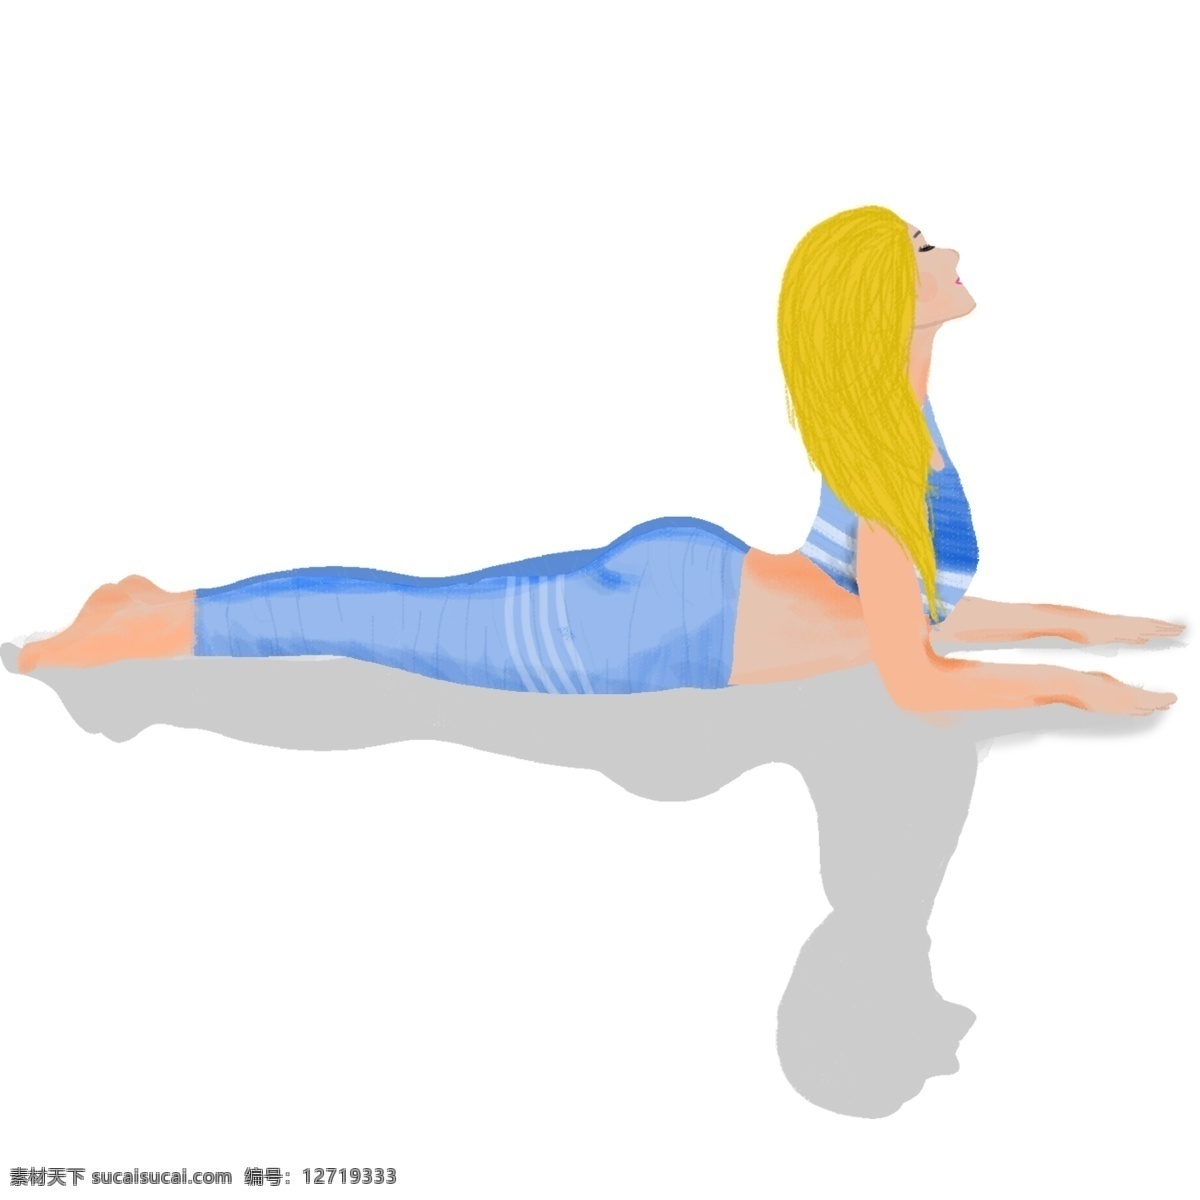 瑜伽 运动 人物 女孩 健身 手绘 绘画 卡通 简约 小清新 装饰 彩色